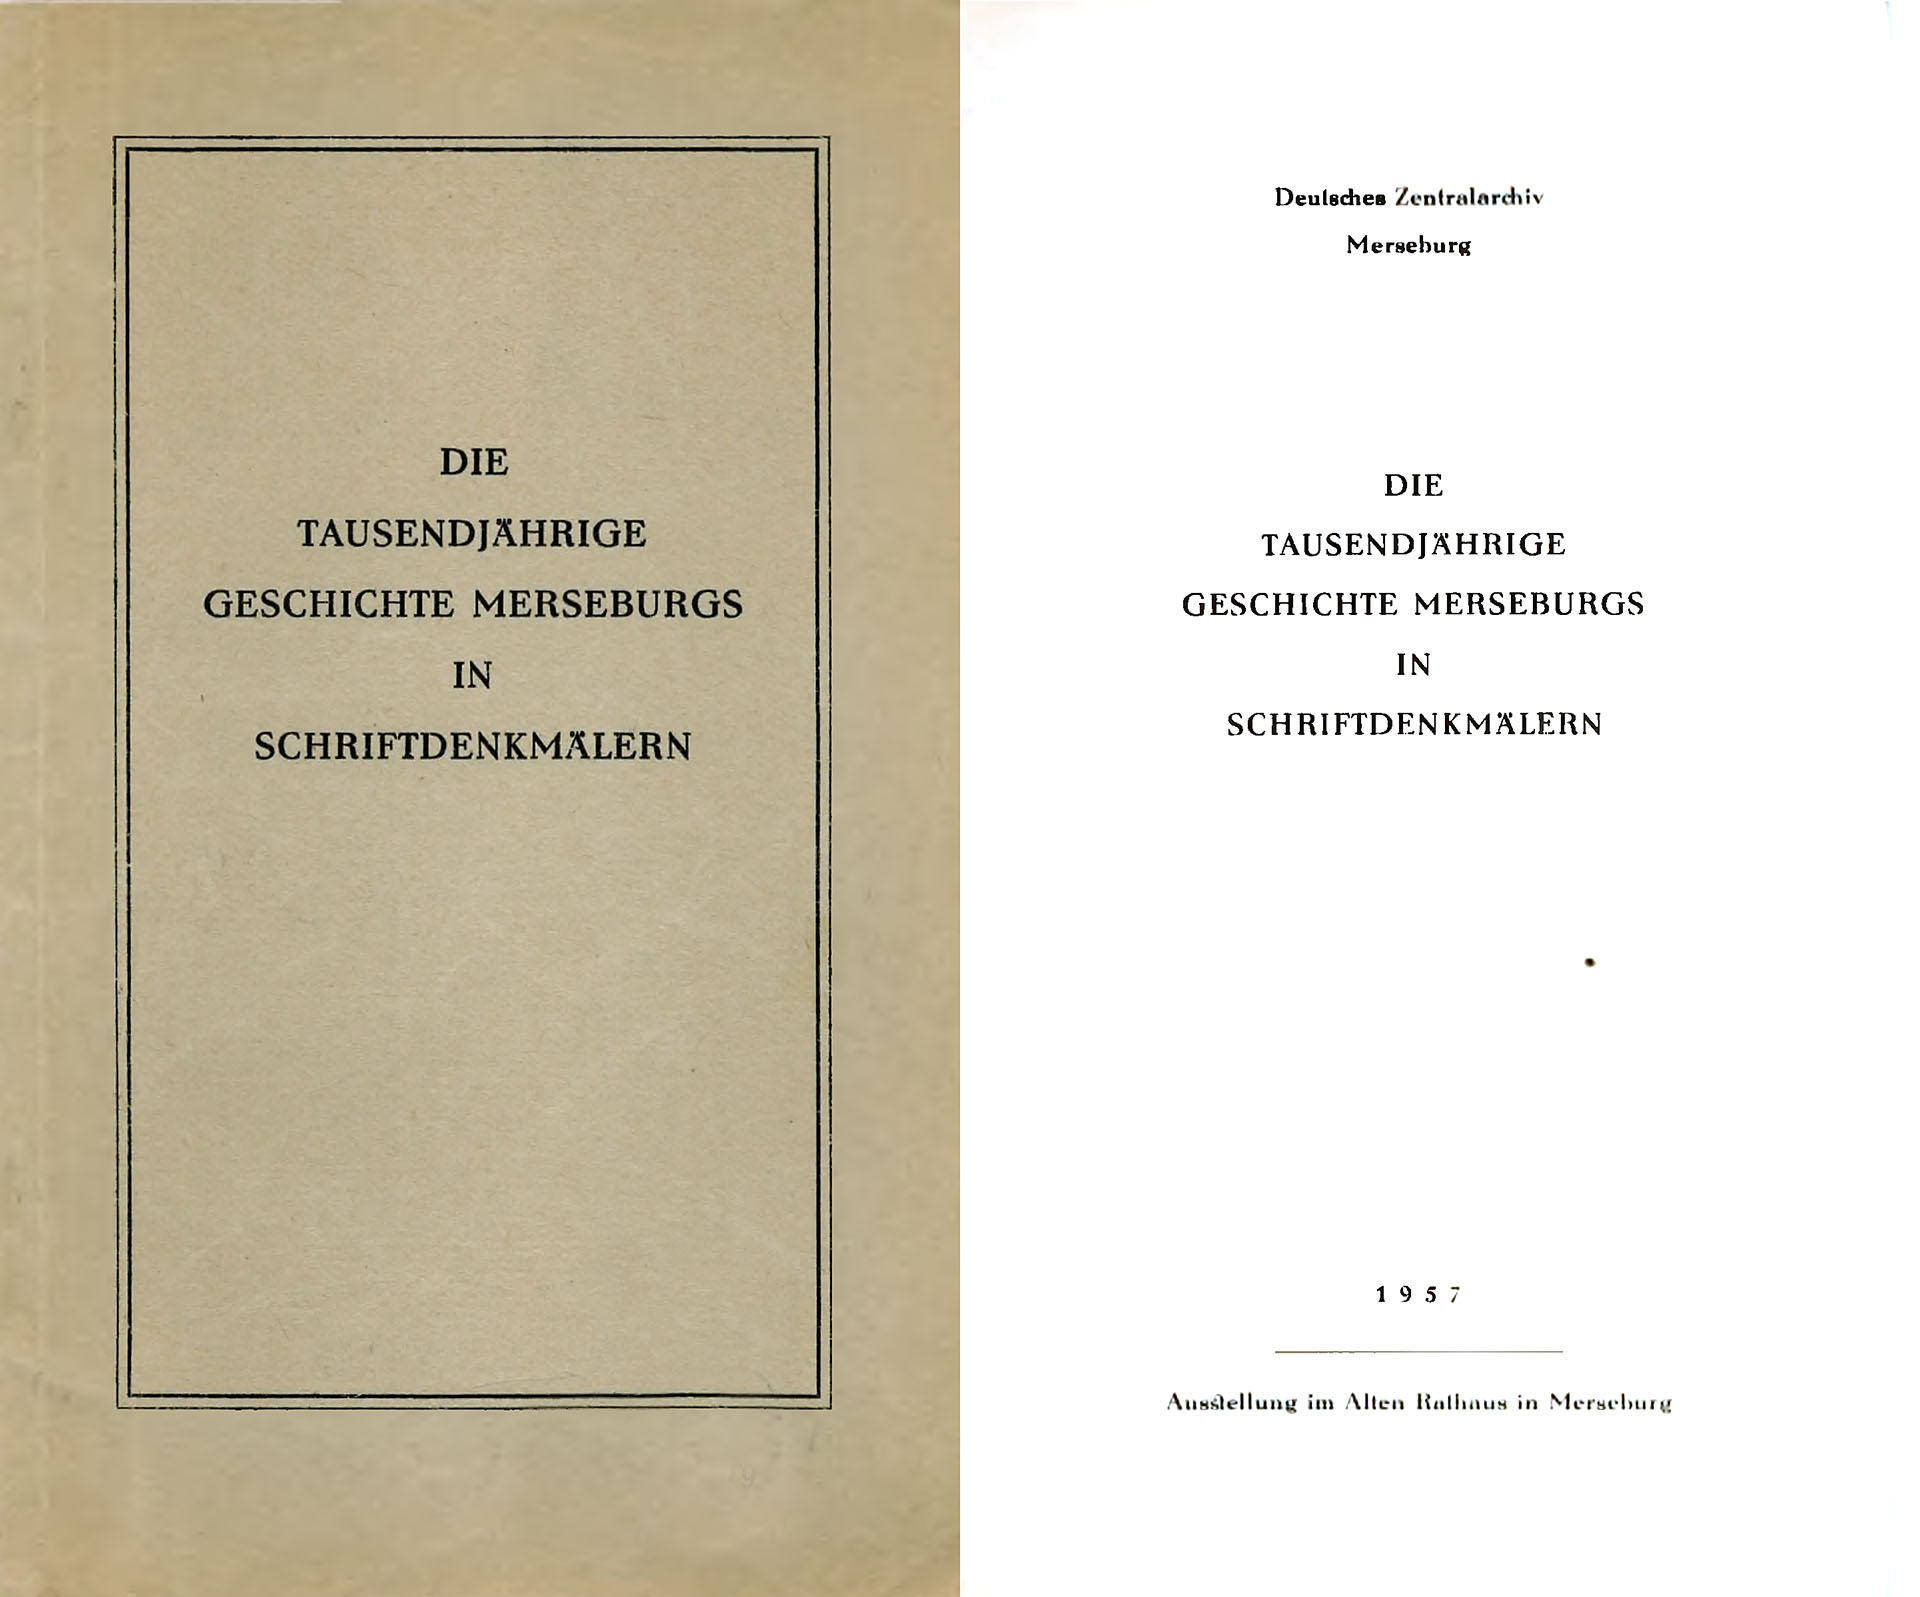 Die tausendjährige Geschichte Merseburgs in Schriftdenkmälern - Deutsches Zentralarchiv Merseburg